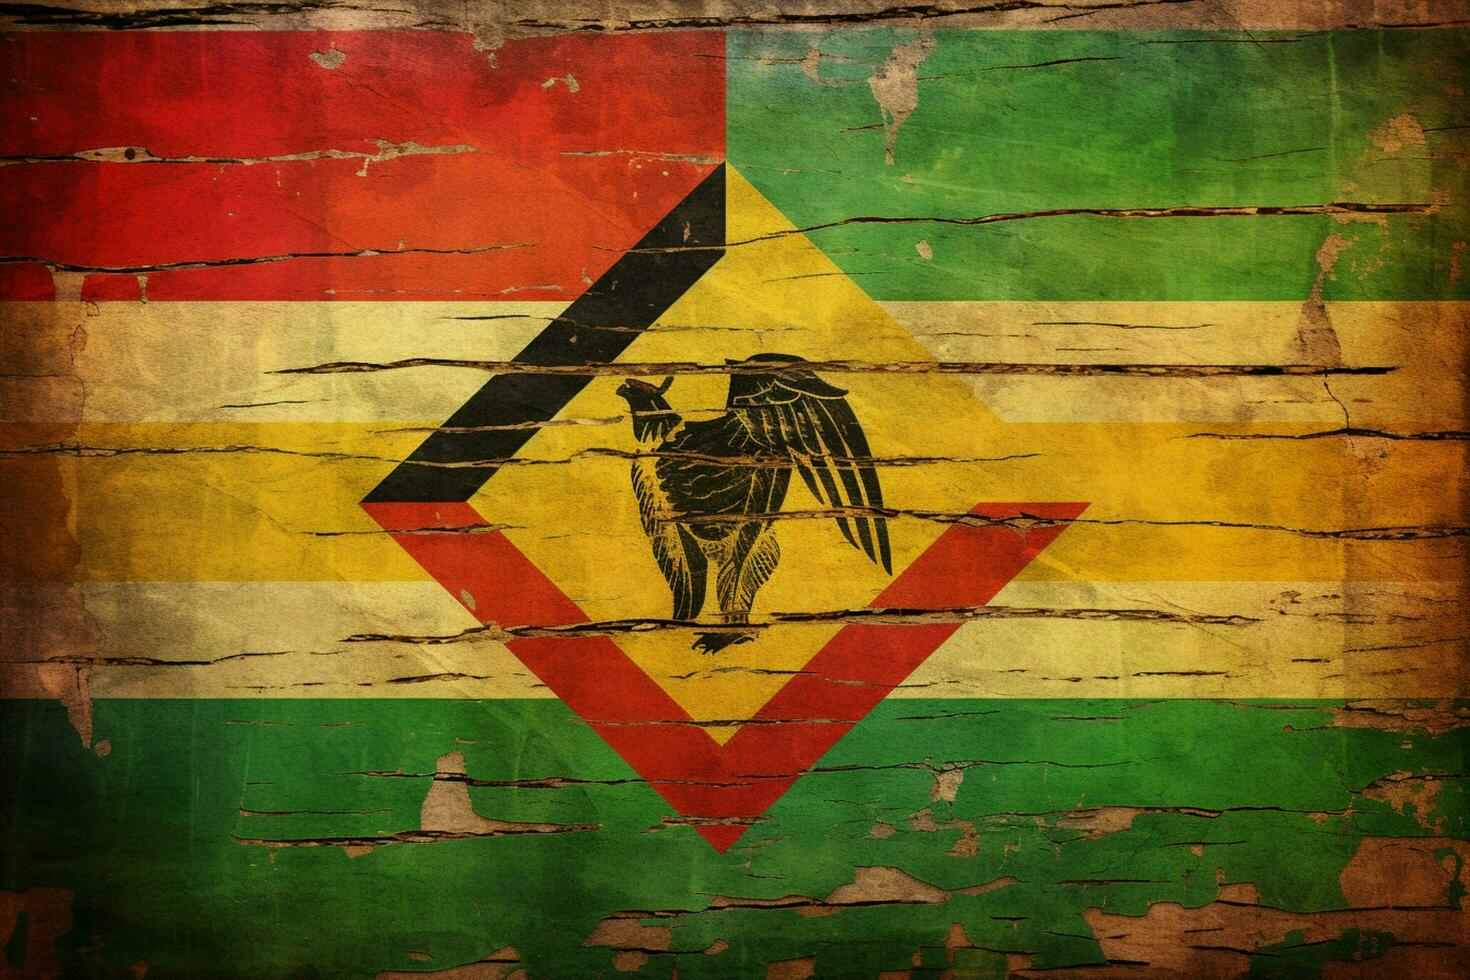 flag wallpaper of Zimbabwe photo